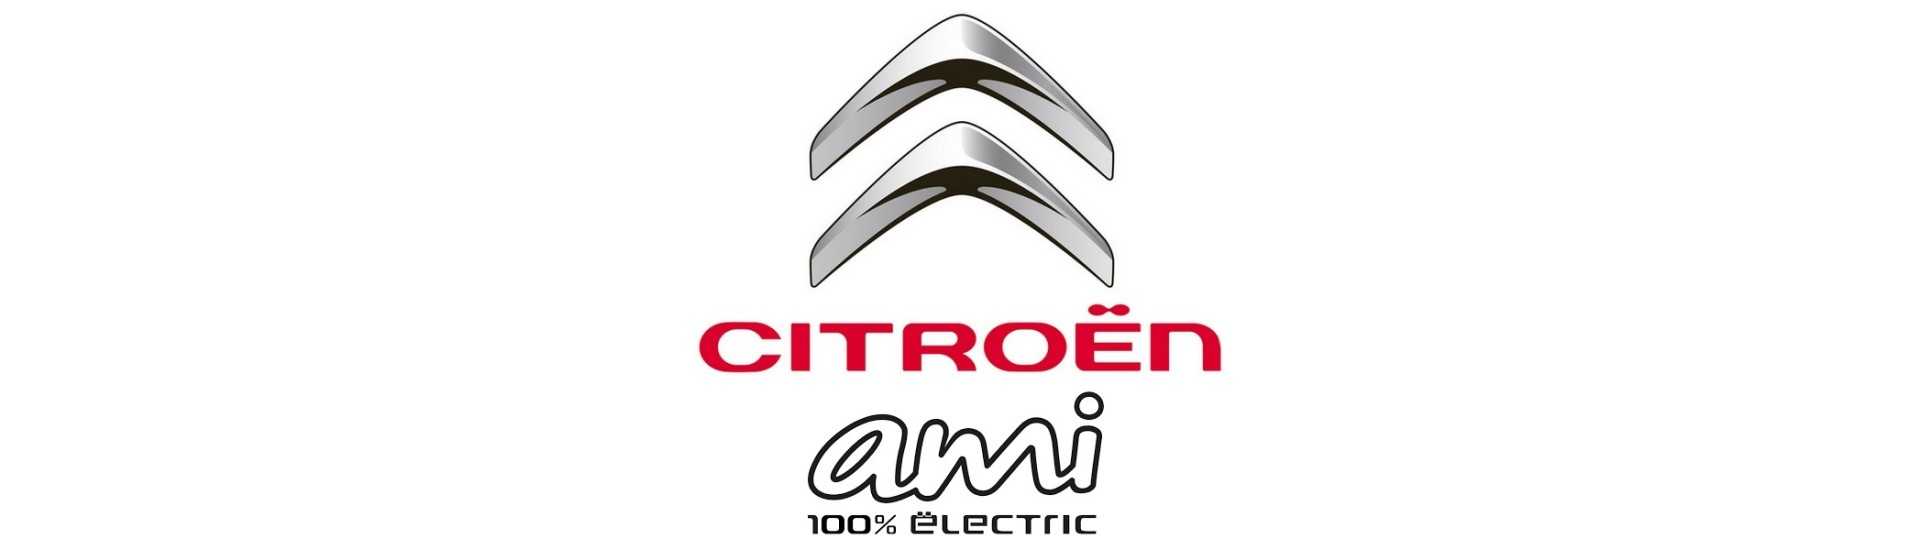 Citroën, cel mai bun autoturism fără permis